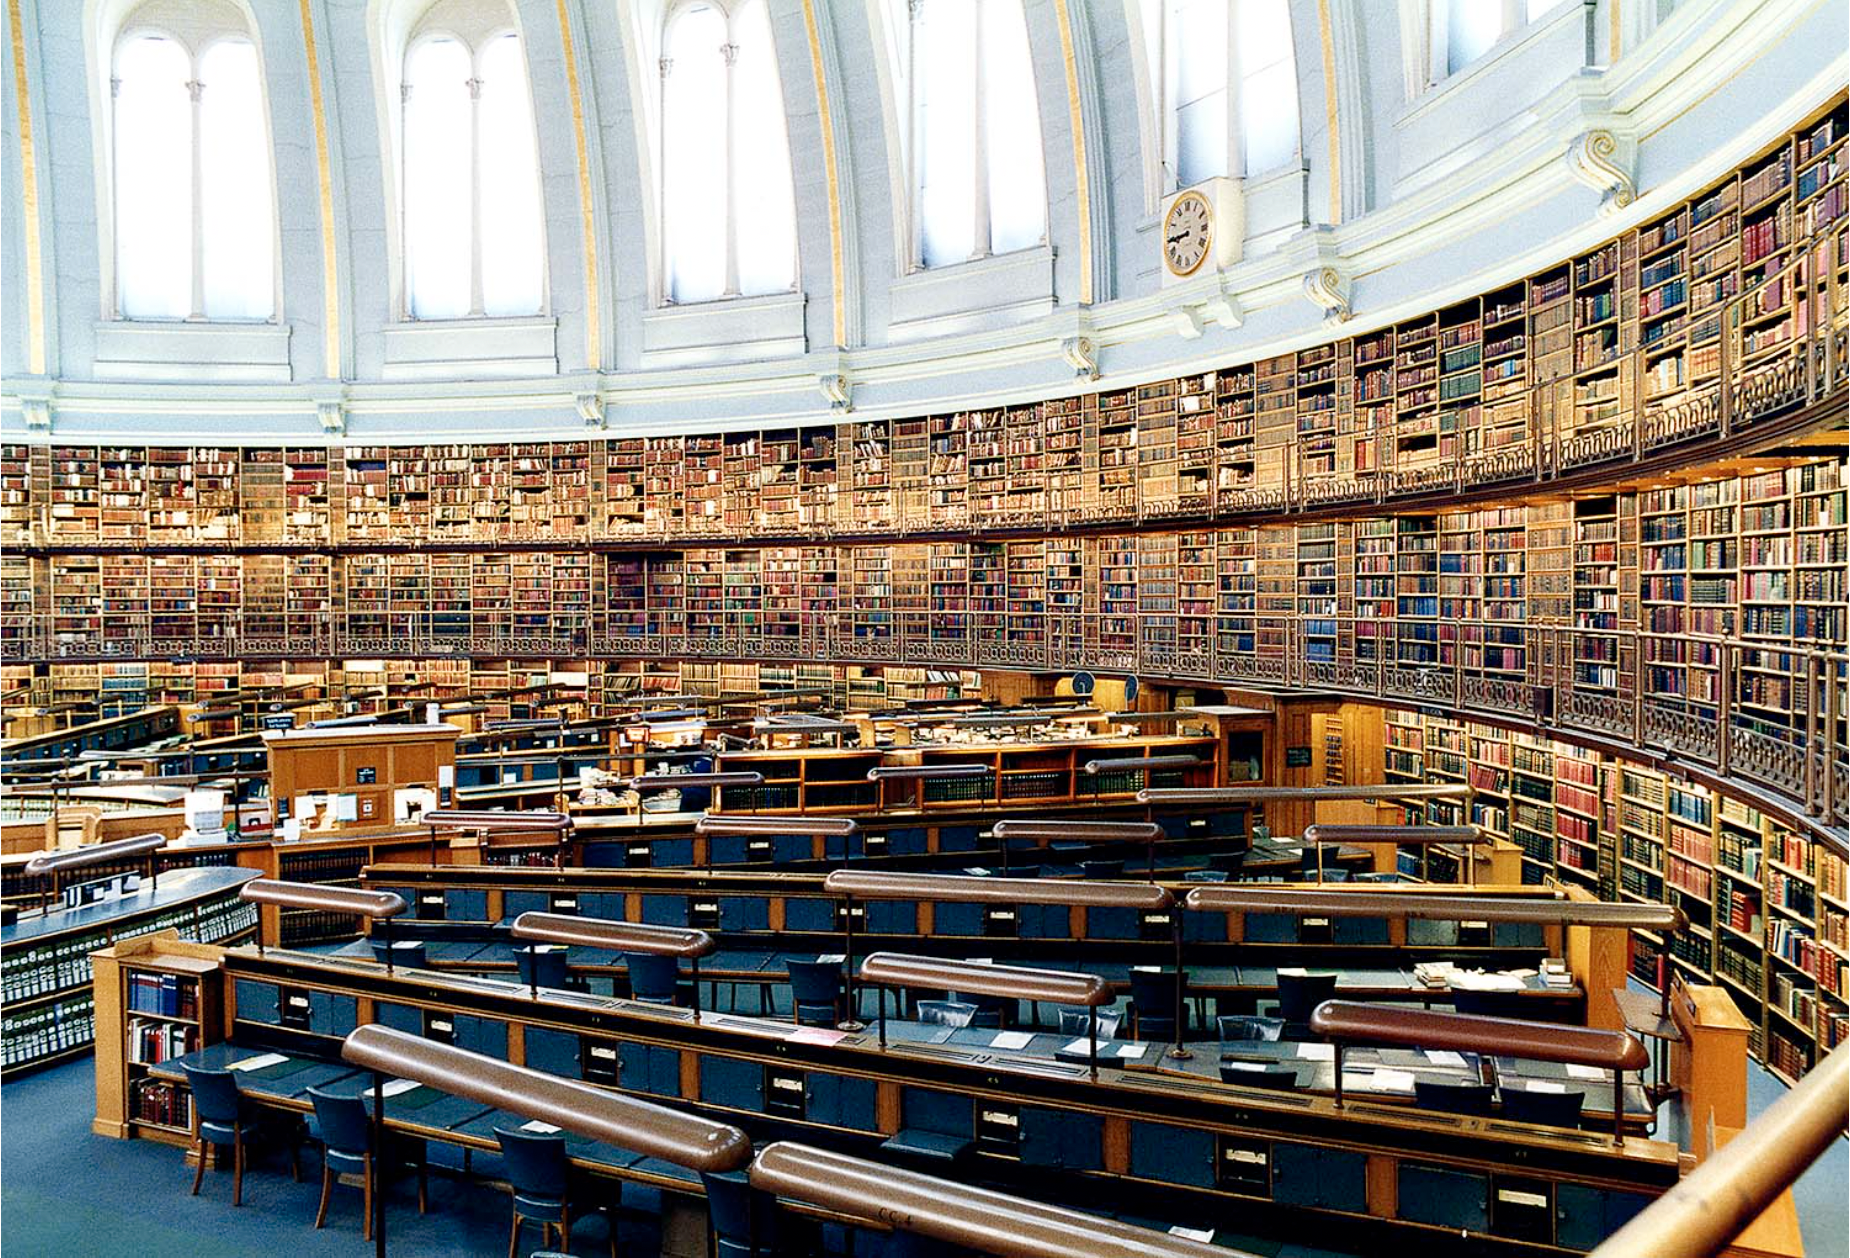 Большой зал библиотеки. Библиотека британского музея в Лондоне. Британский музей Лондон читательный зал. Национальная библиотека Великобритании книгохранилище. Британская библиотека (British Library).